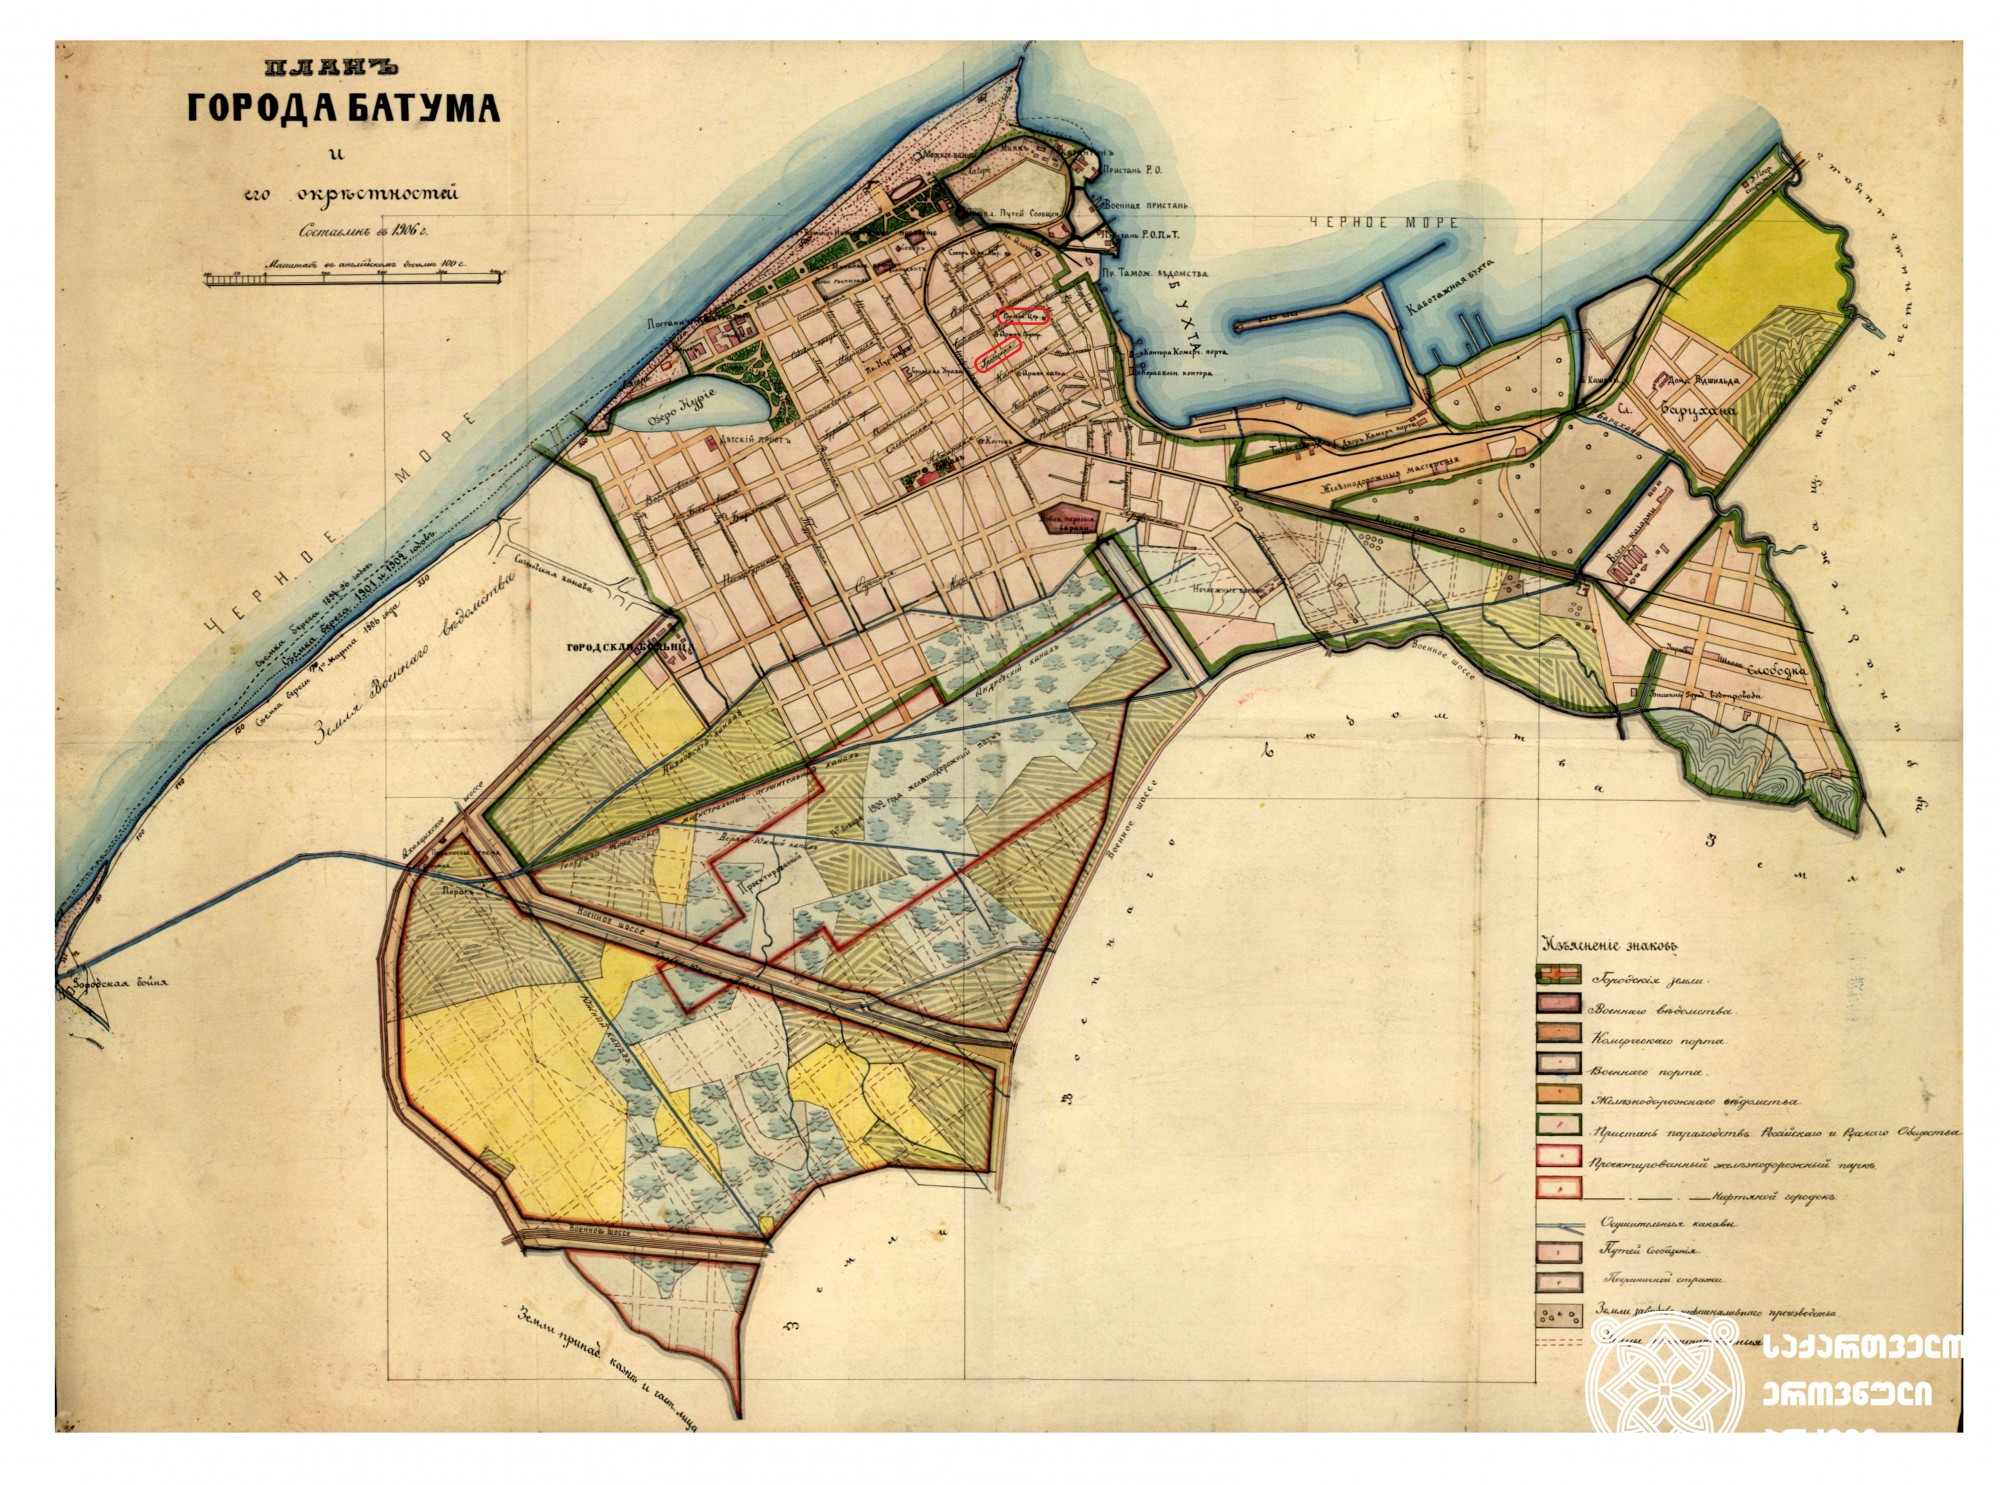 ბათუმისა და მისი შემოგარენის გეგმა. <br>
გეგმაზე დატანილია ბათუმში მდებარე ბერძნული ეკლესია და აღნიშნულია ბერძნის ქუჩა. <br>
1906 წელი. <br>

Plan for Batumi and its surroundings. <br>
The plan includes a Greek church in Batumi and Greek Street. <br>
1906.